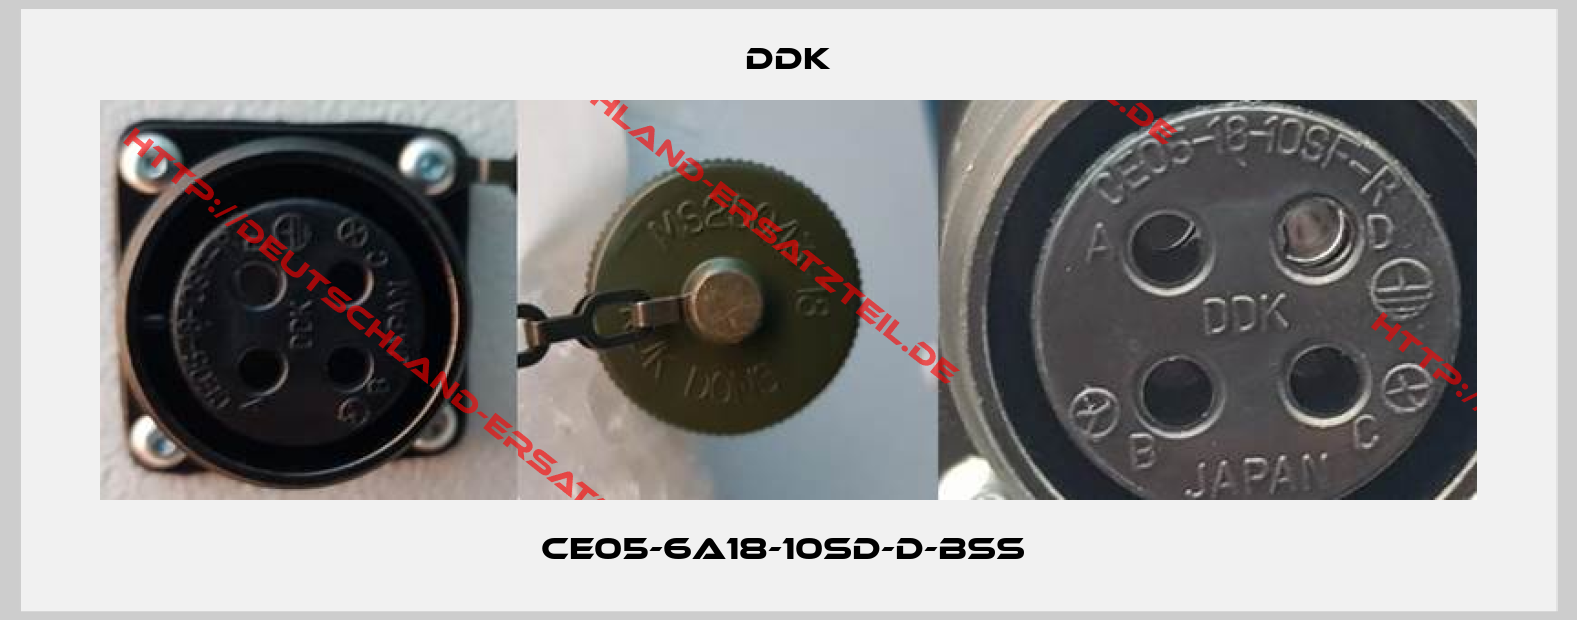 DDK-CE05-6A18-10SD-D-BSS 